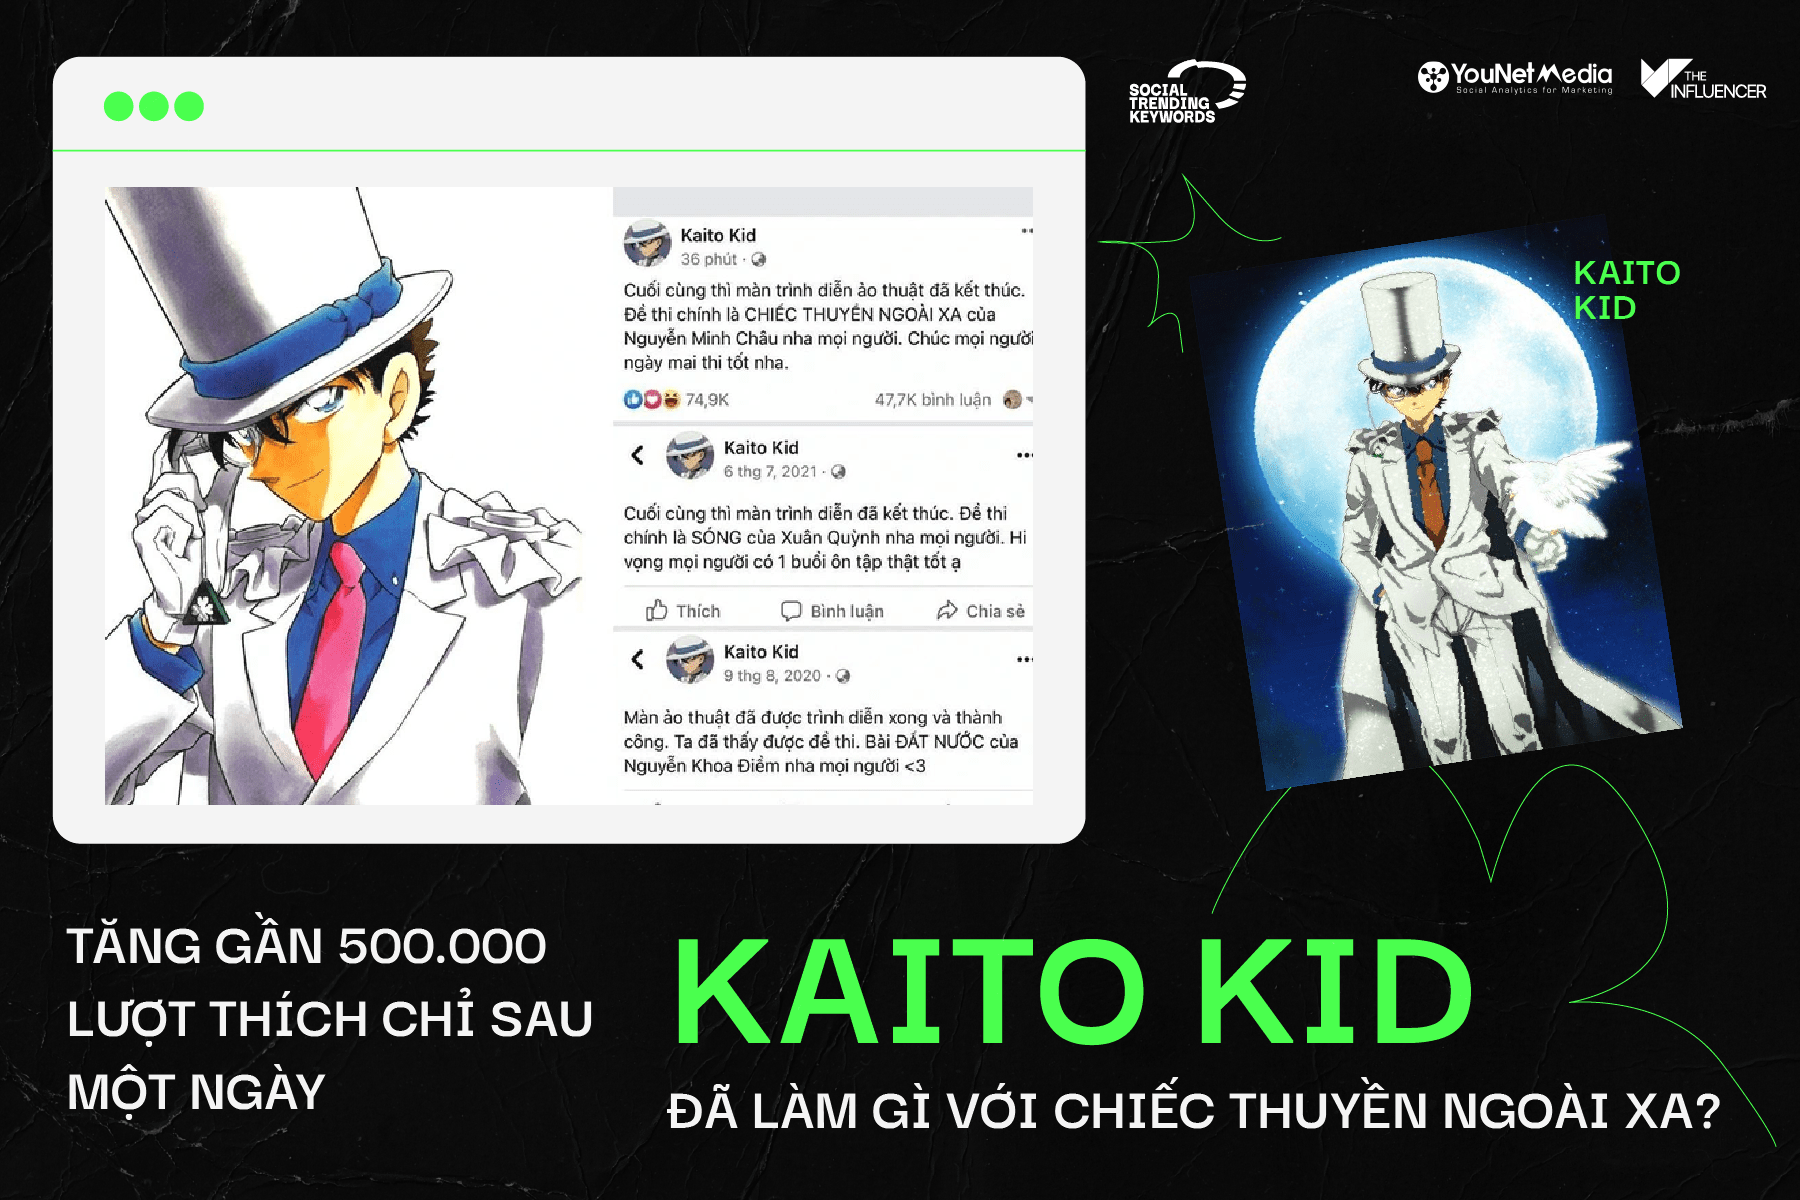 Tăng gần 500.000 lượt thích chỉ sau một ngày, Kaito Kid đã làm gì với Chiếc Thuyền Ngoài Xa?